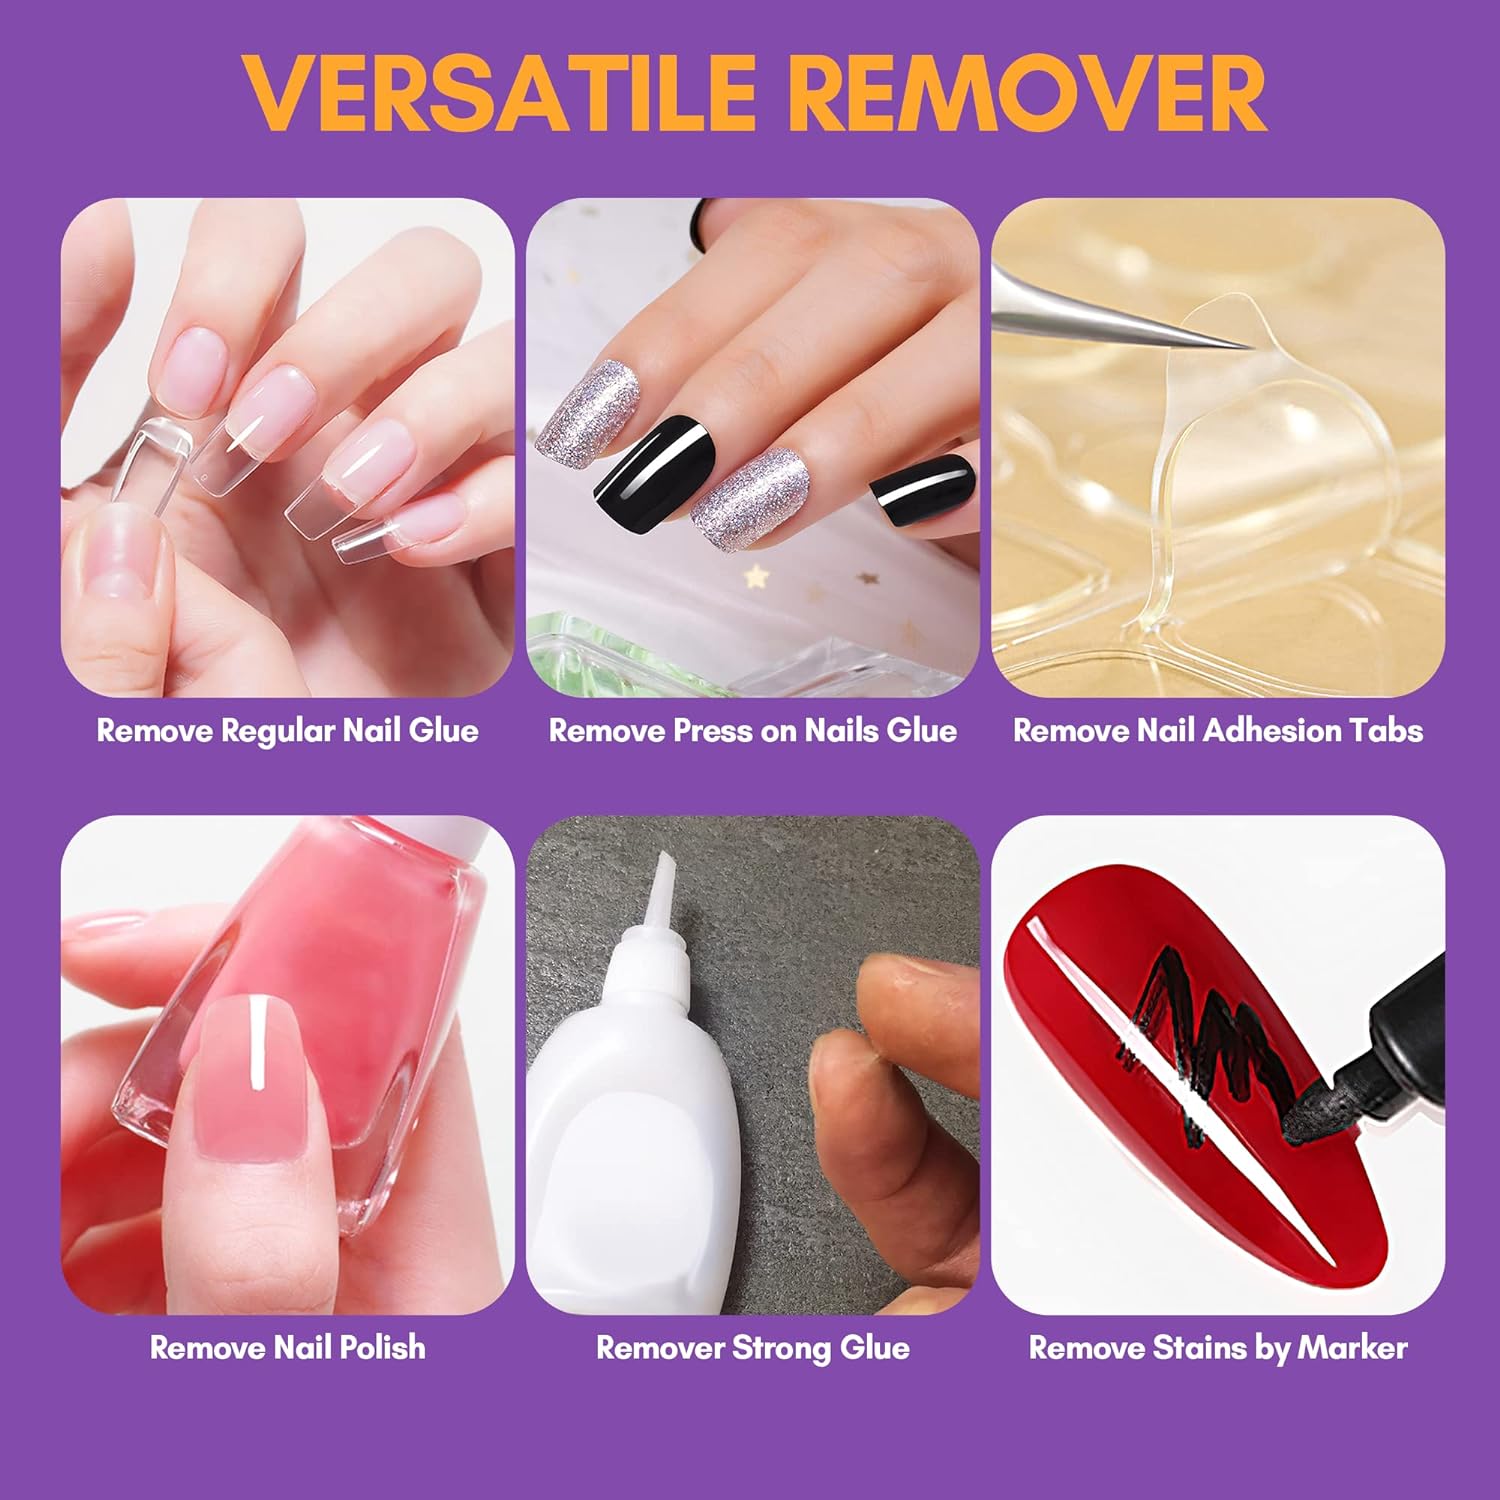 15ml Debonder Nail Glue Remover Glue Off for Press on Nails,Professional  Glue off Nail Glue Remover Fake Nails Adhesives, Can't Remove Gel Nail  Polish